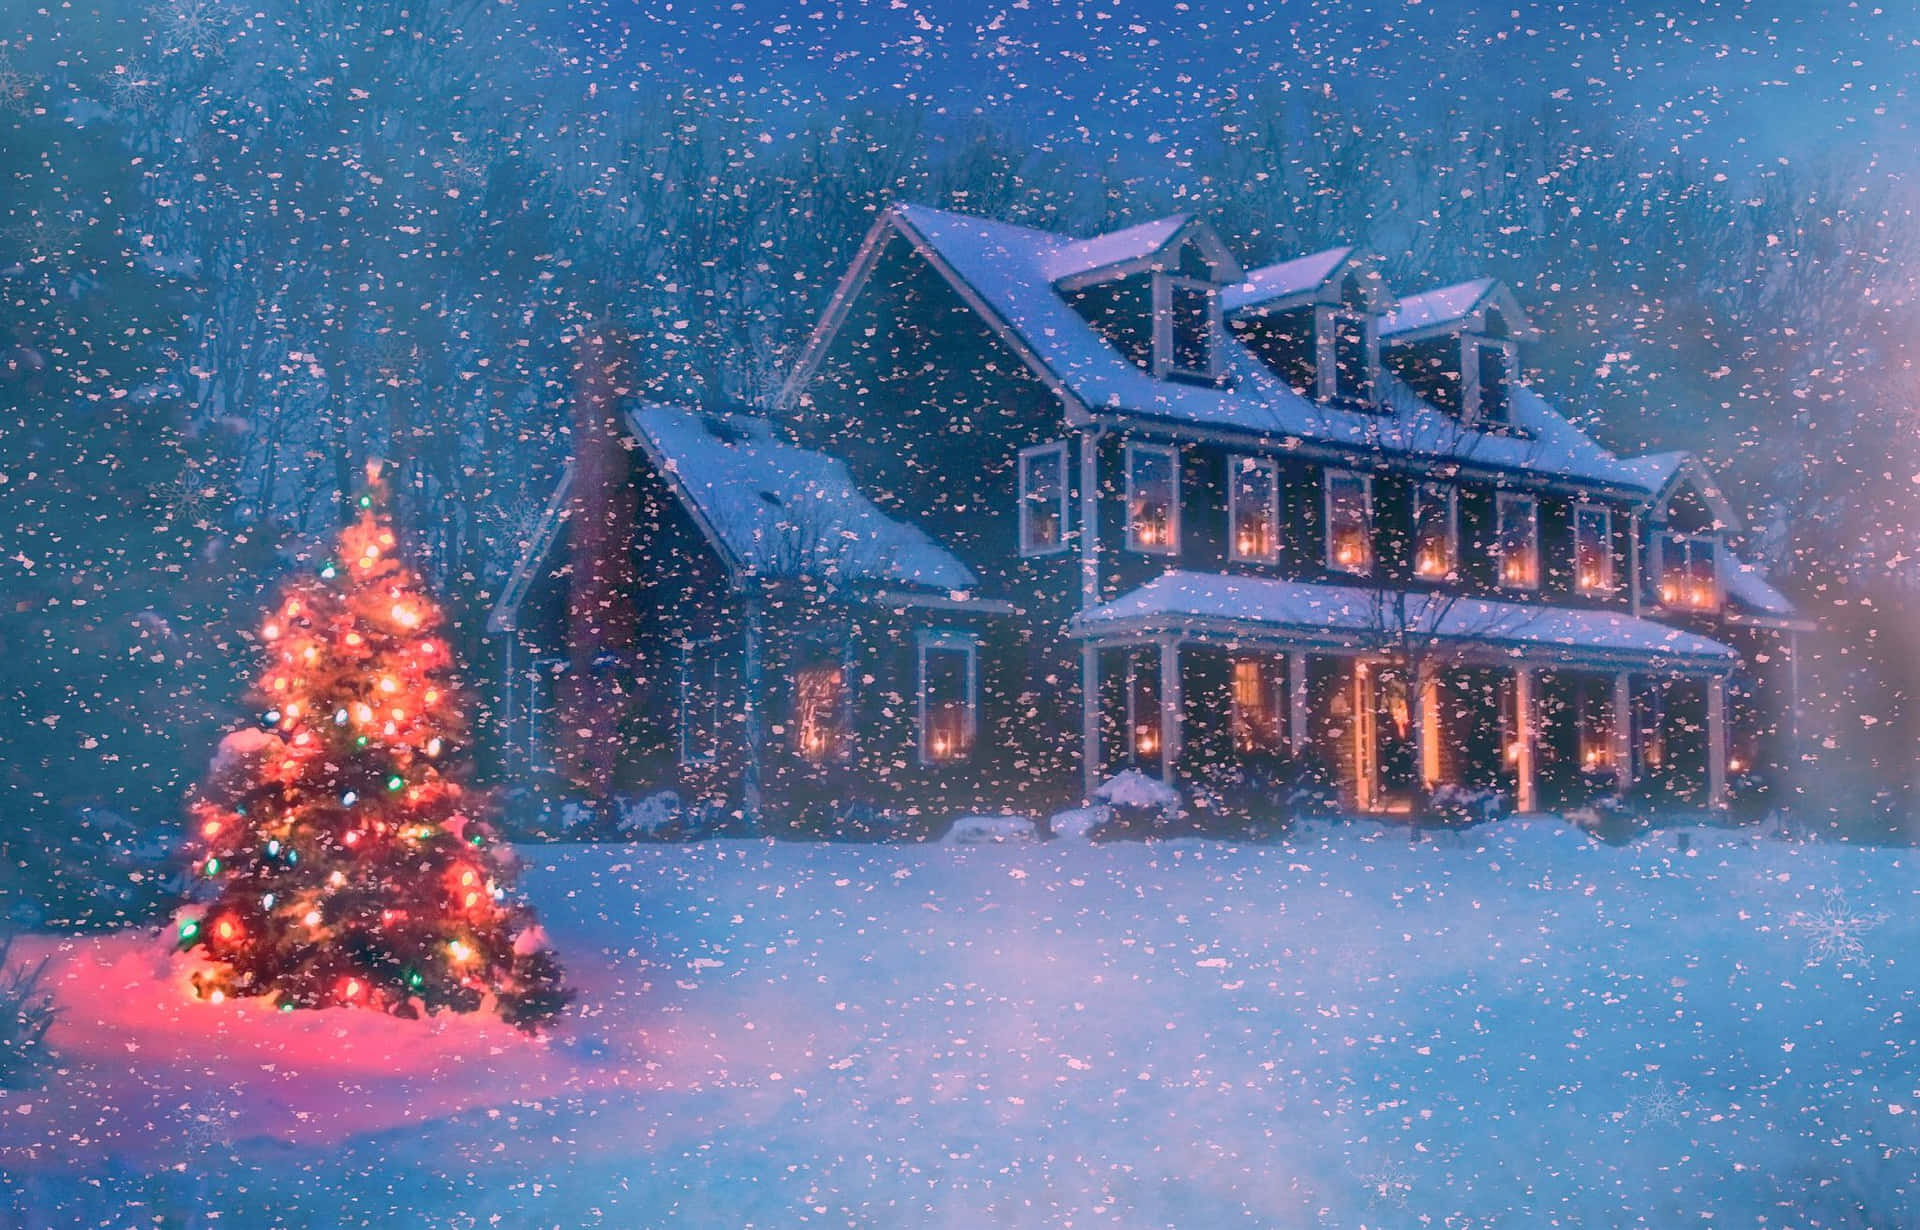 Aproveiteuma Noite De Inverno Aconchegante Ao Ar Livre Com Um Cenário Perfeito De Neve De Natal. Papel de Parede